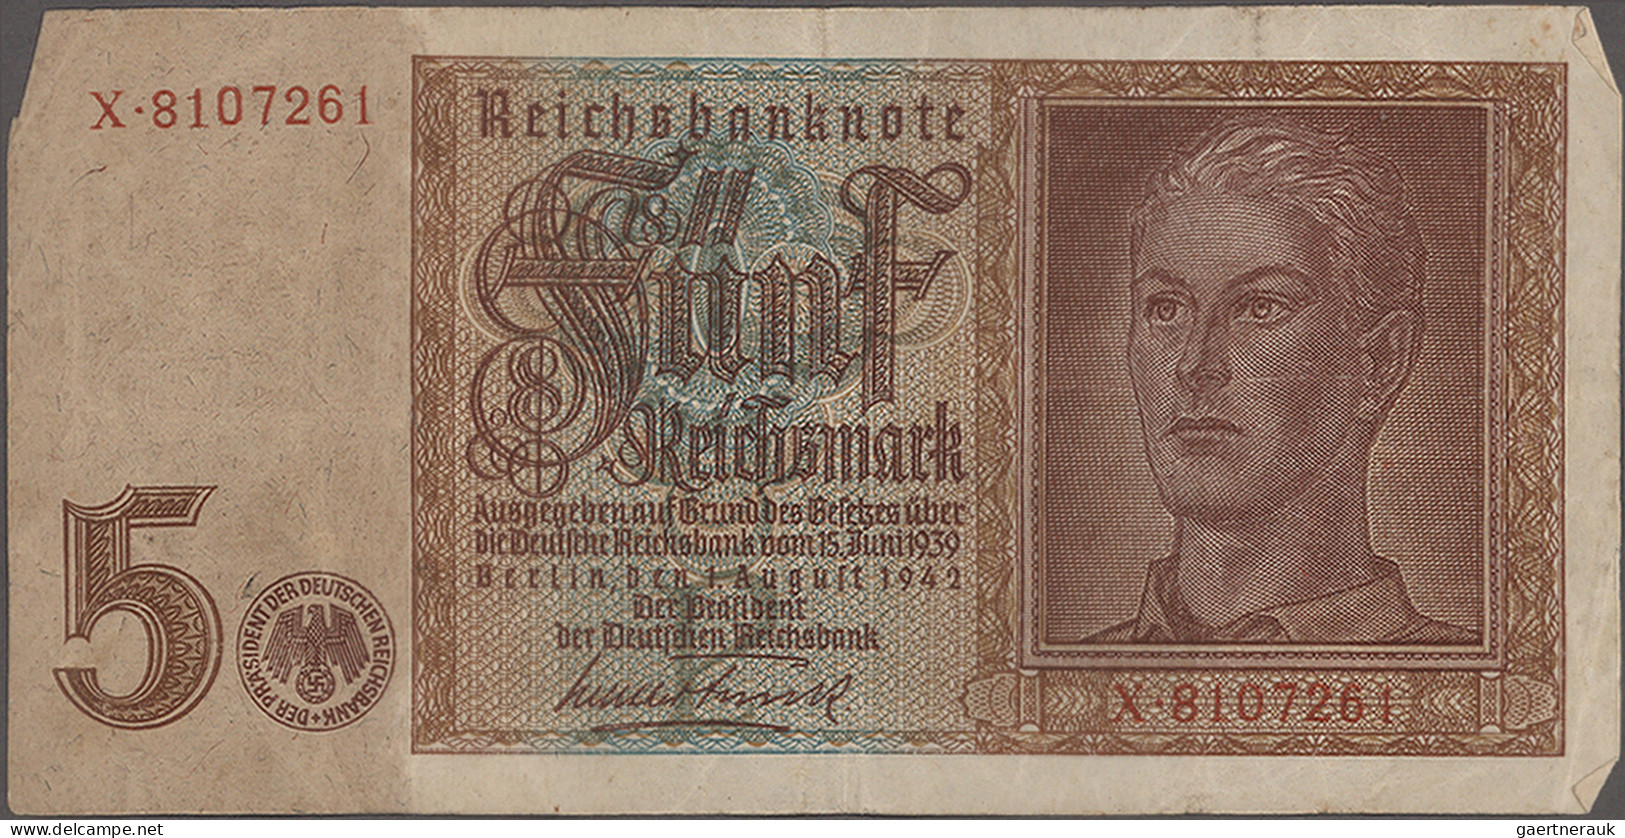 Deutschland - Deutsches Reich bis 1945: Zwei Alben und ein paar lose Banknoten /